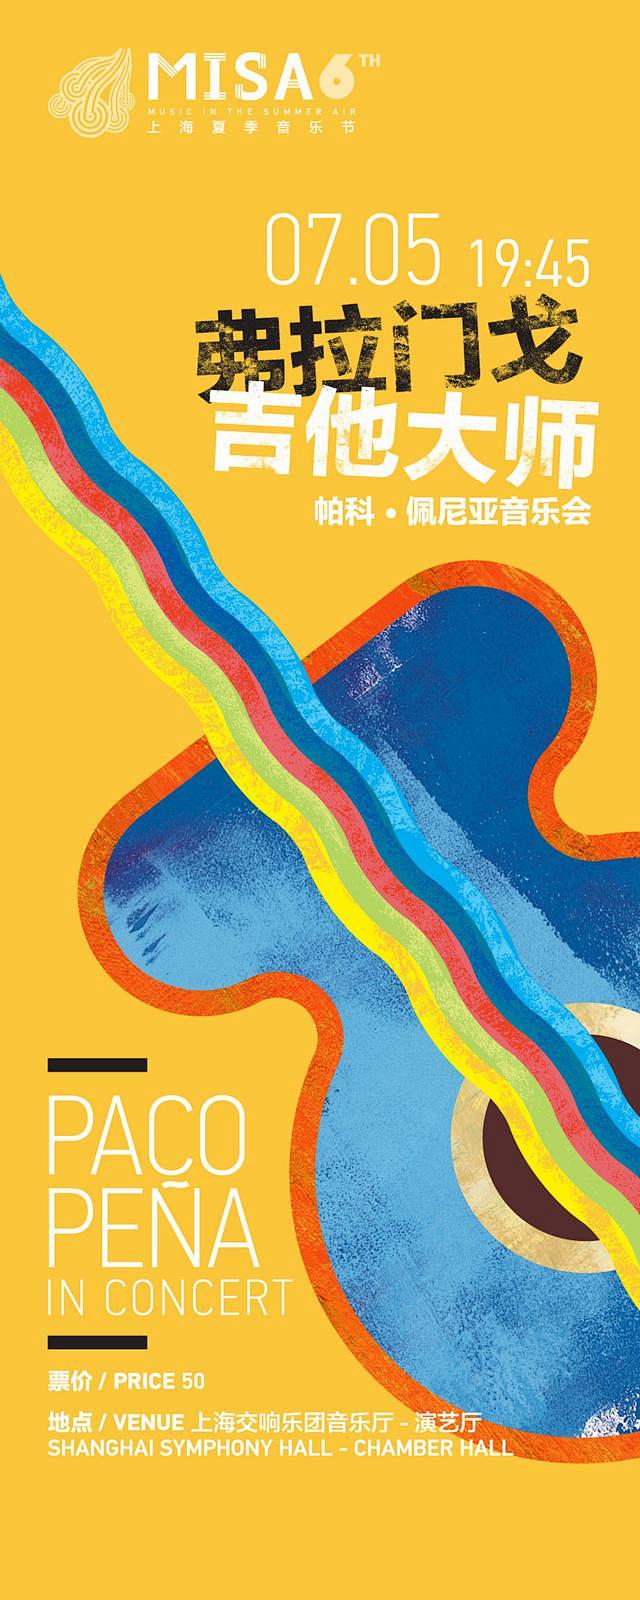 2015年上海夏季音乐节演出日历